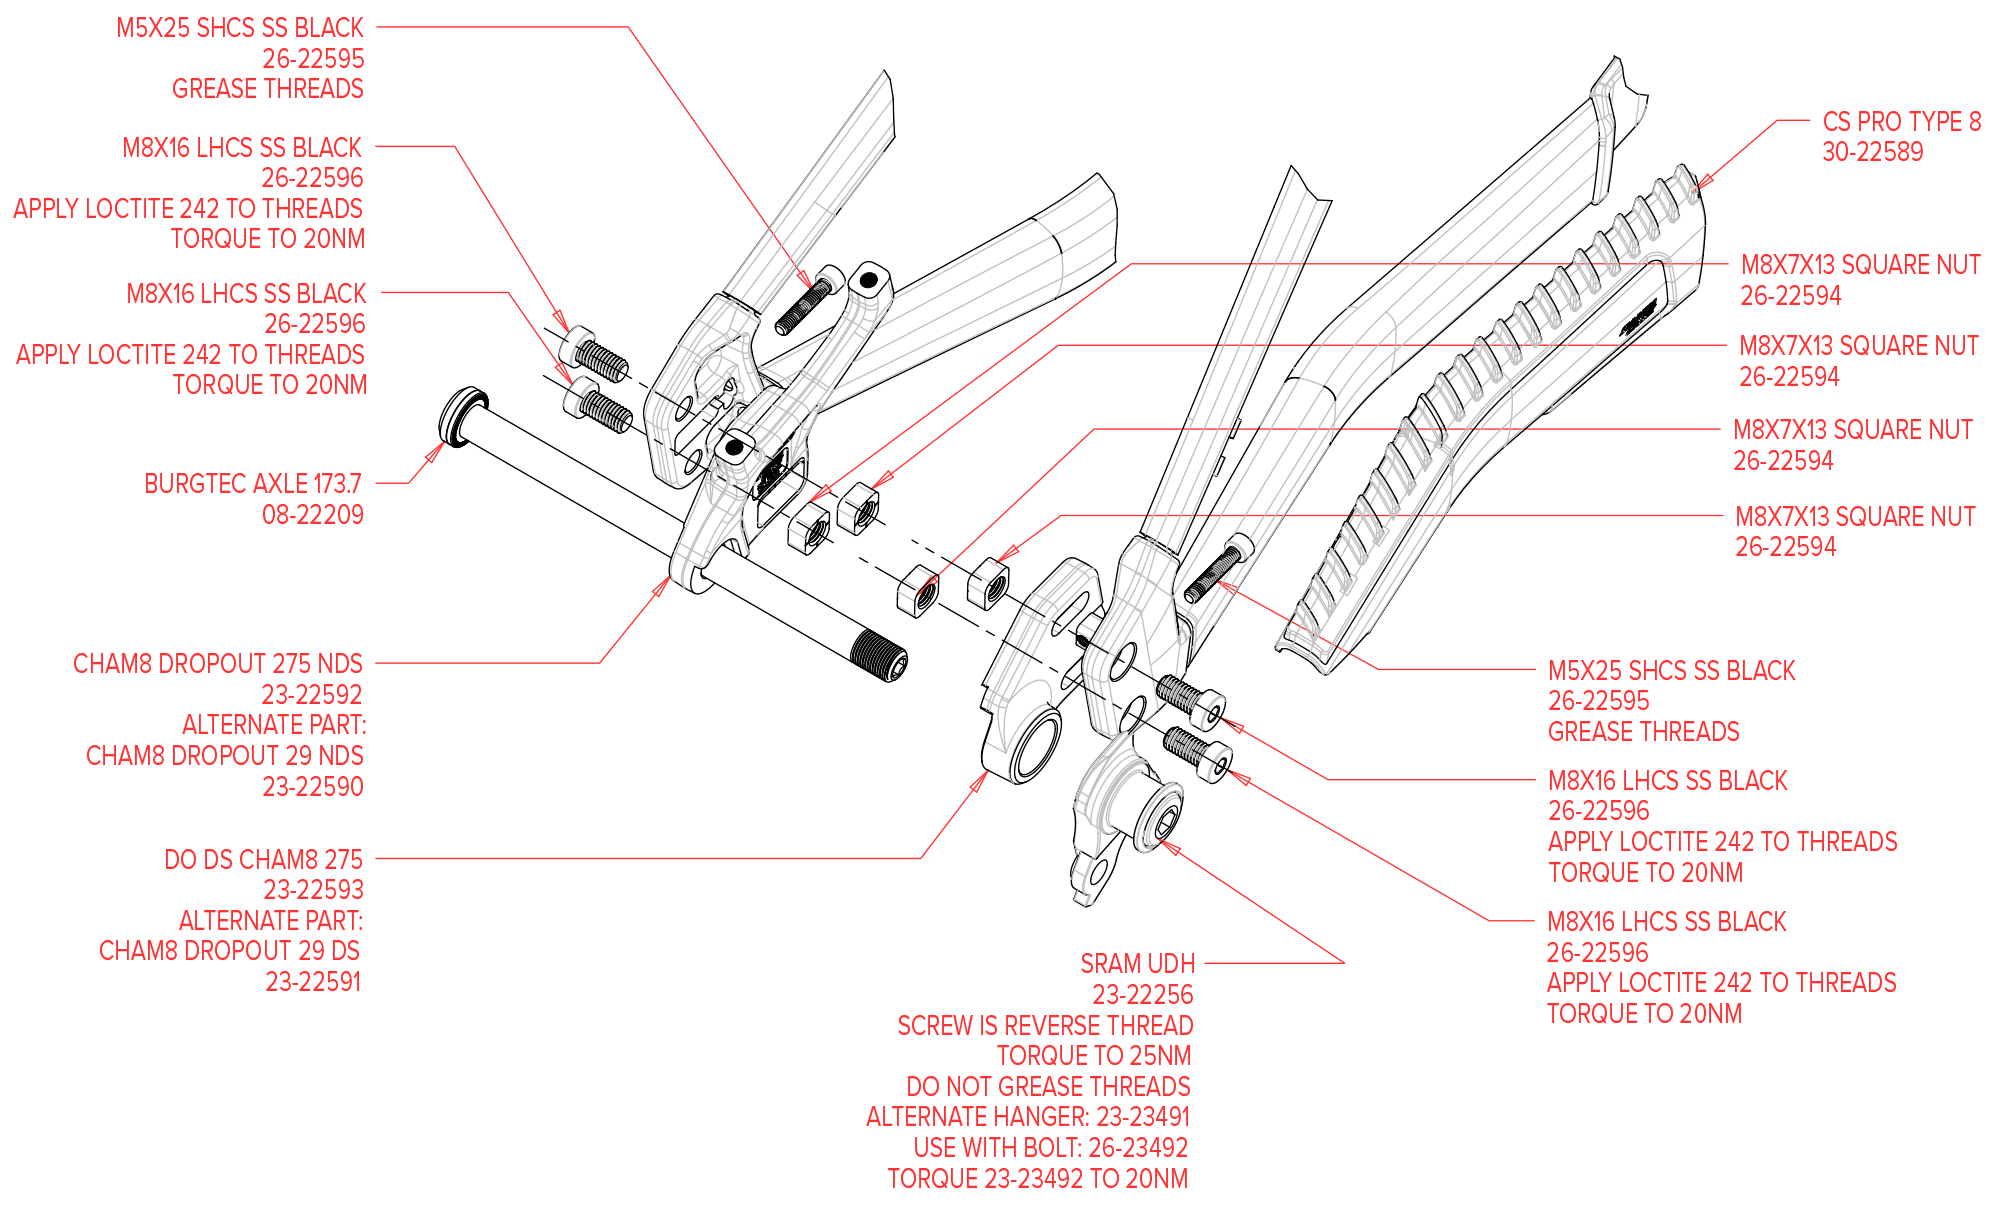 Chameleon 8A exploded diagram